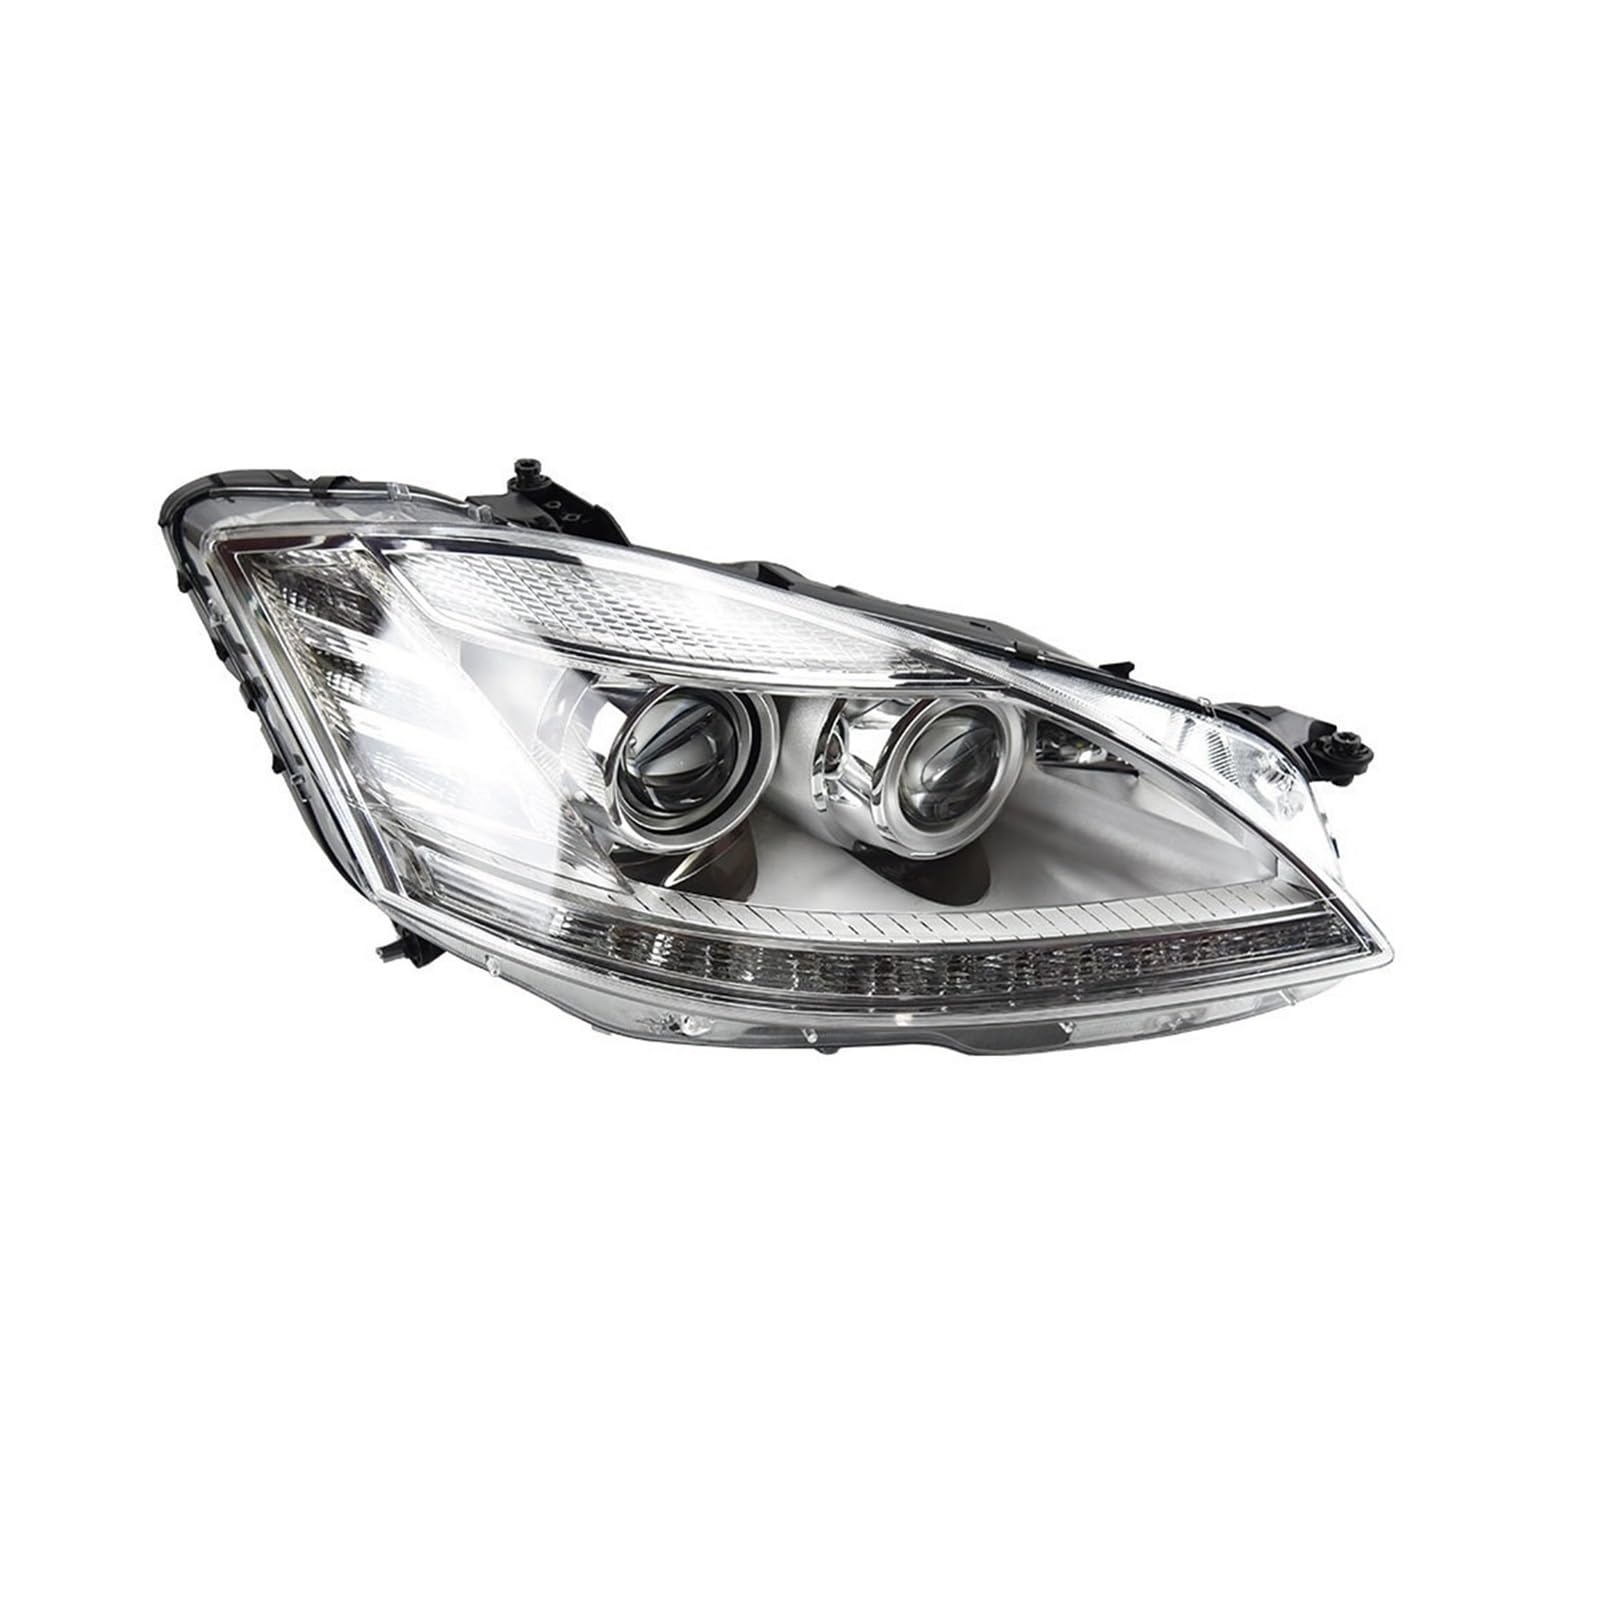 QuKan Auto Style Stirnlampe Kompatibel mit Benz W221 2006-2009 S300 S400 Scheinwerfer LED DRL Signal Hid Bi Xenon Auto Zubehör von QuKan